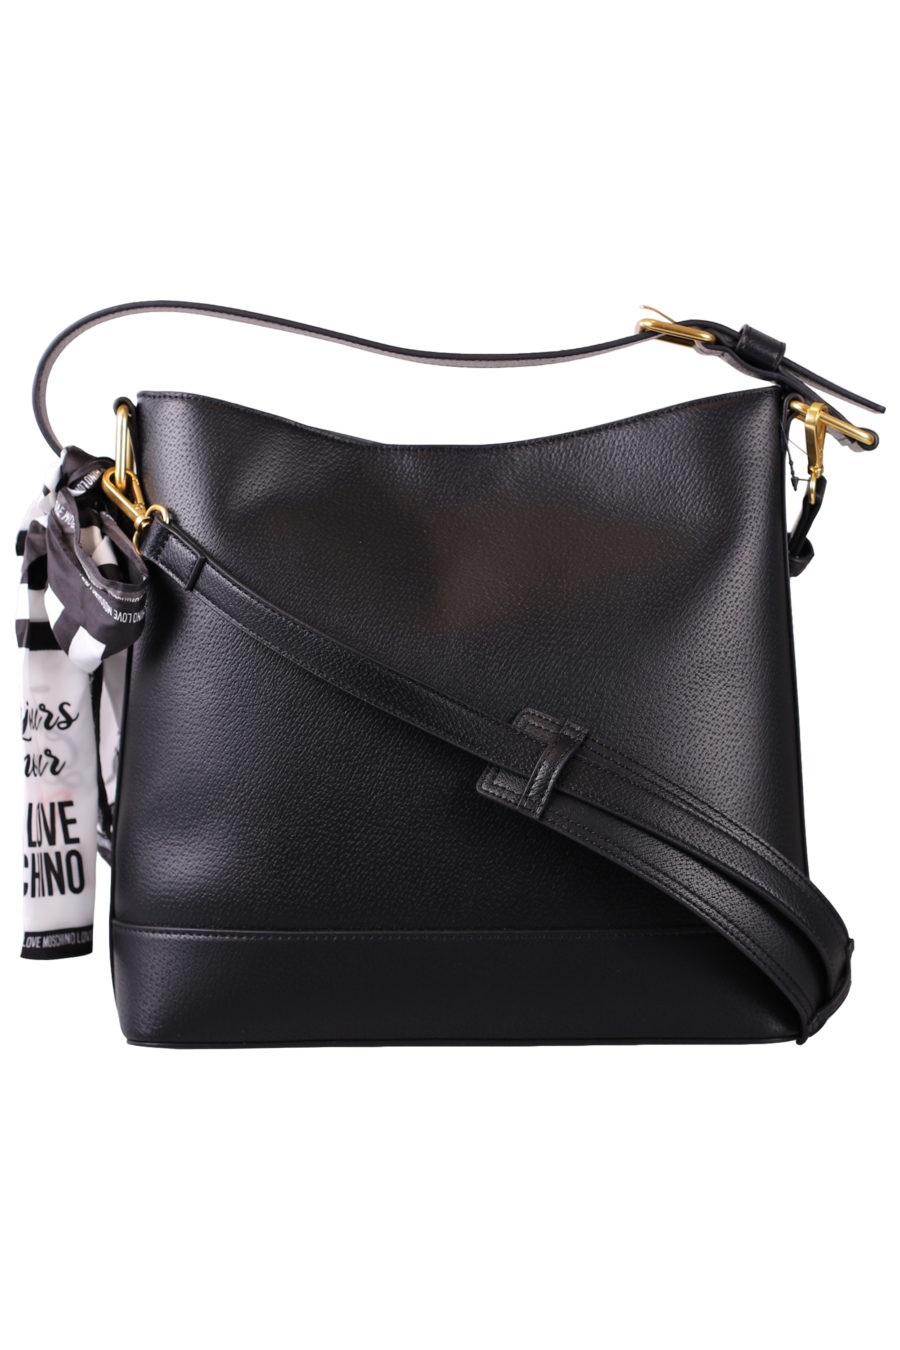 Black handbag with sling - IMG 7064